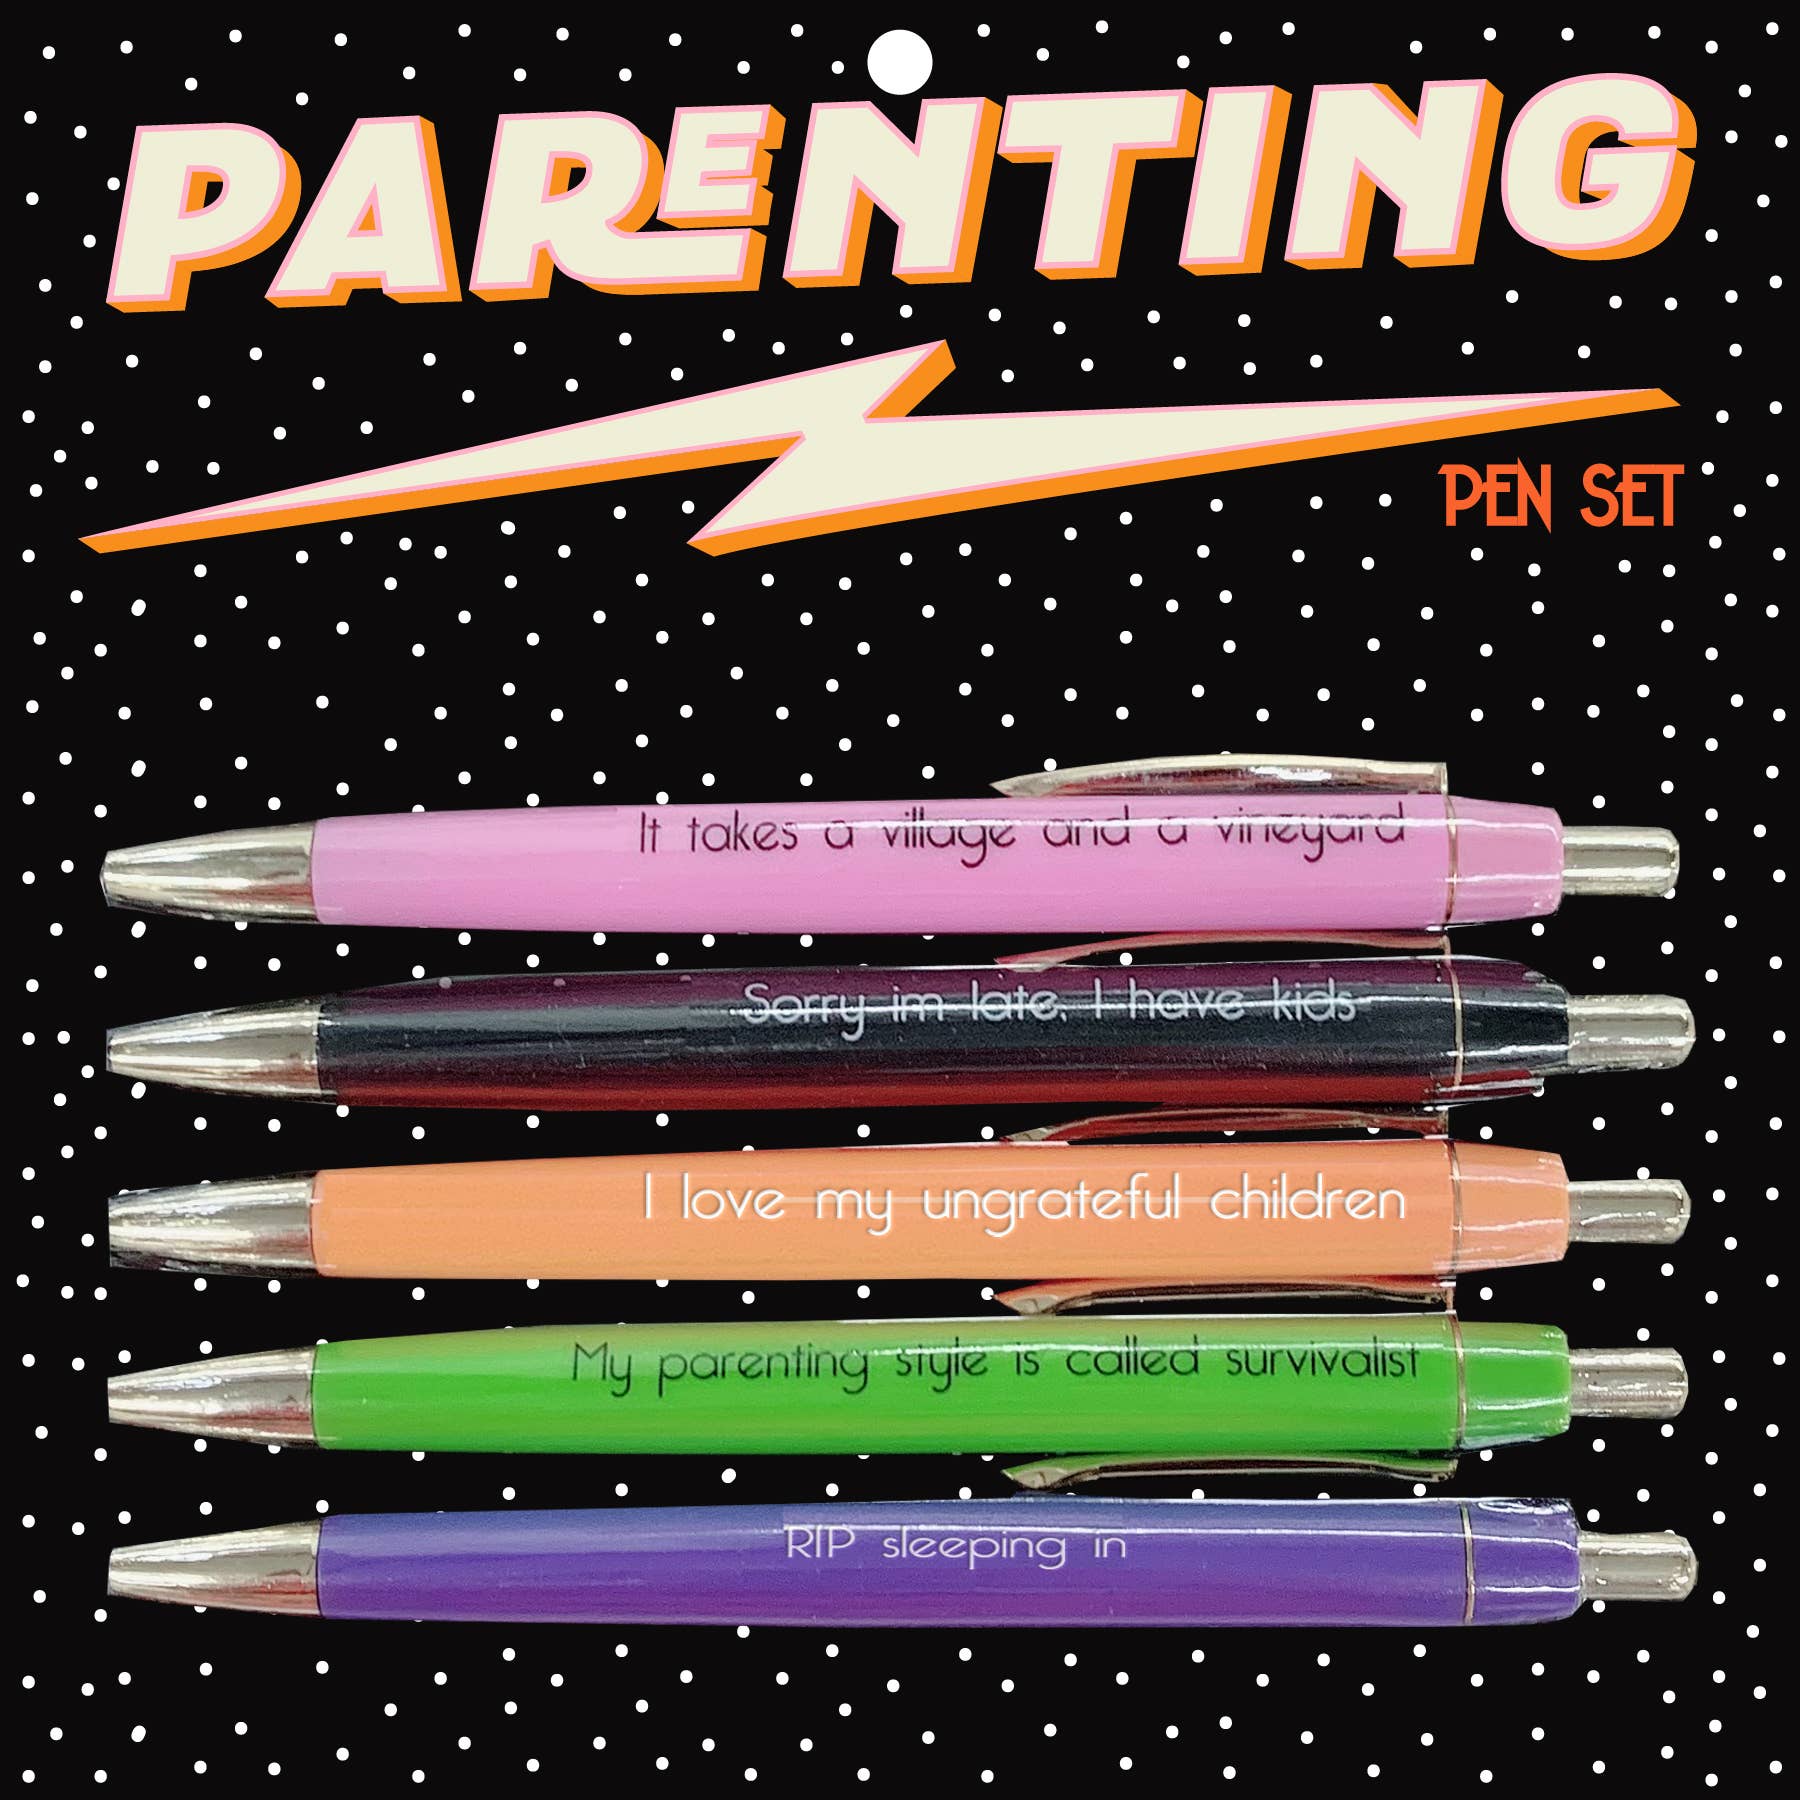 Parenting Funny Pen Set on Gift Card, Set of 5, Black Ink